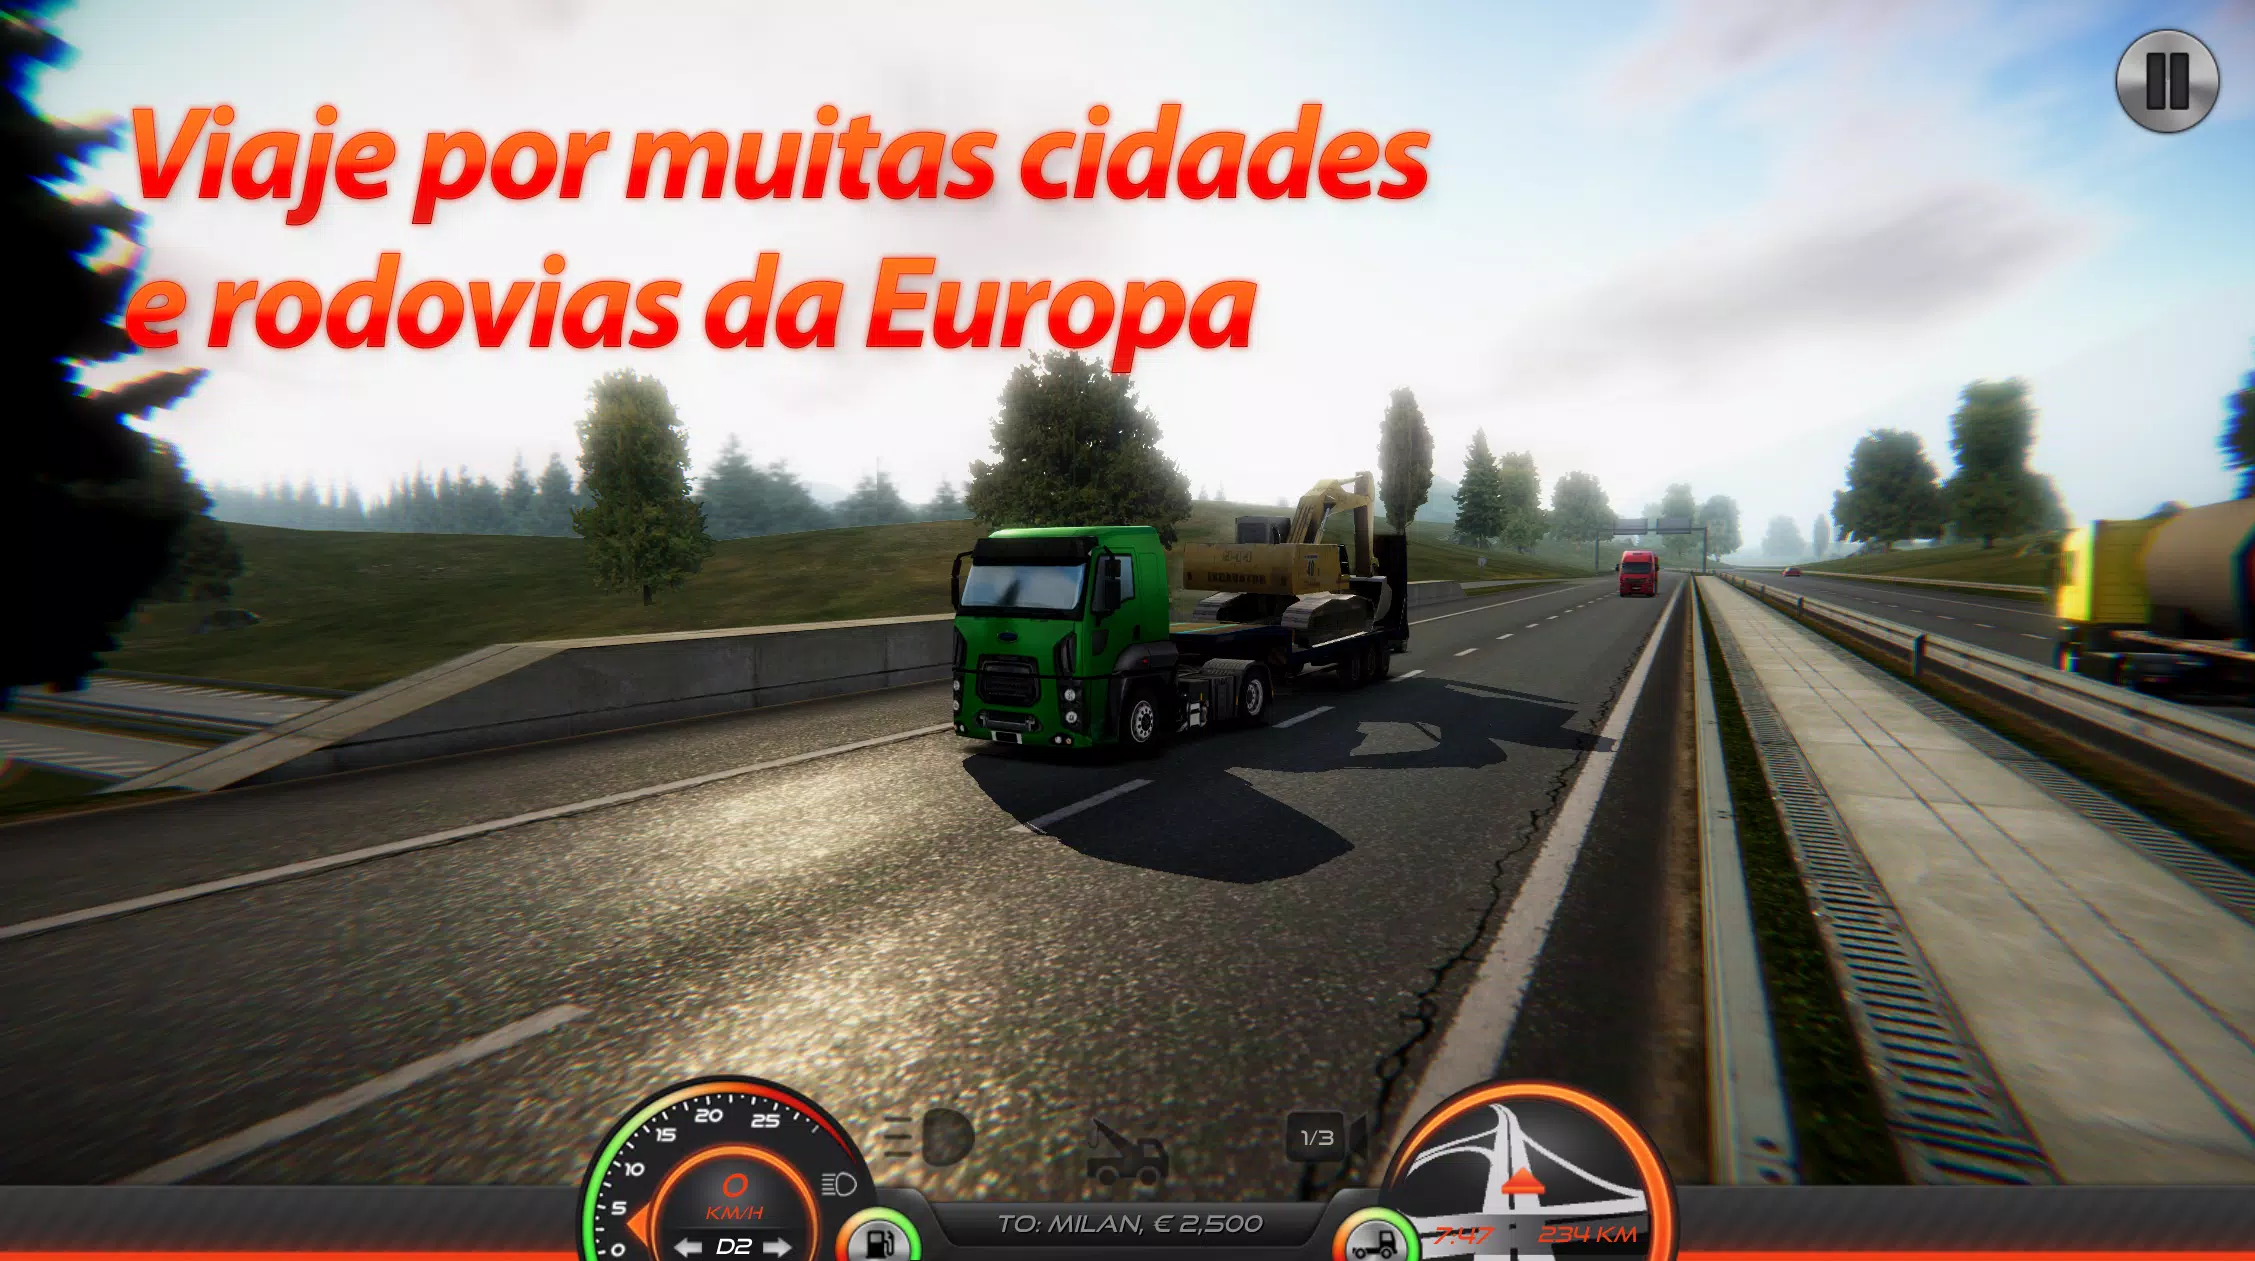 PRIMEIRA VIAGEM - Truck Simulator Europe 3 (Novo Jogo de Caminhões